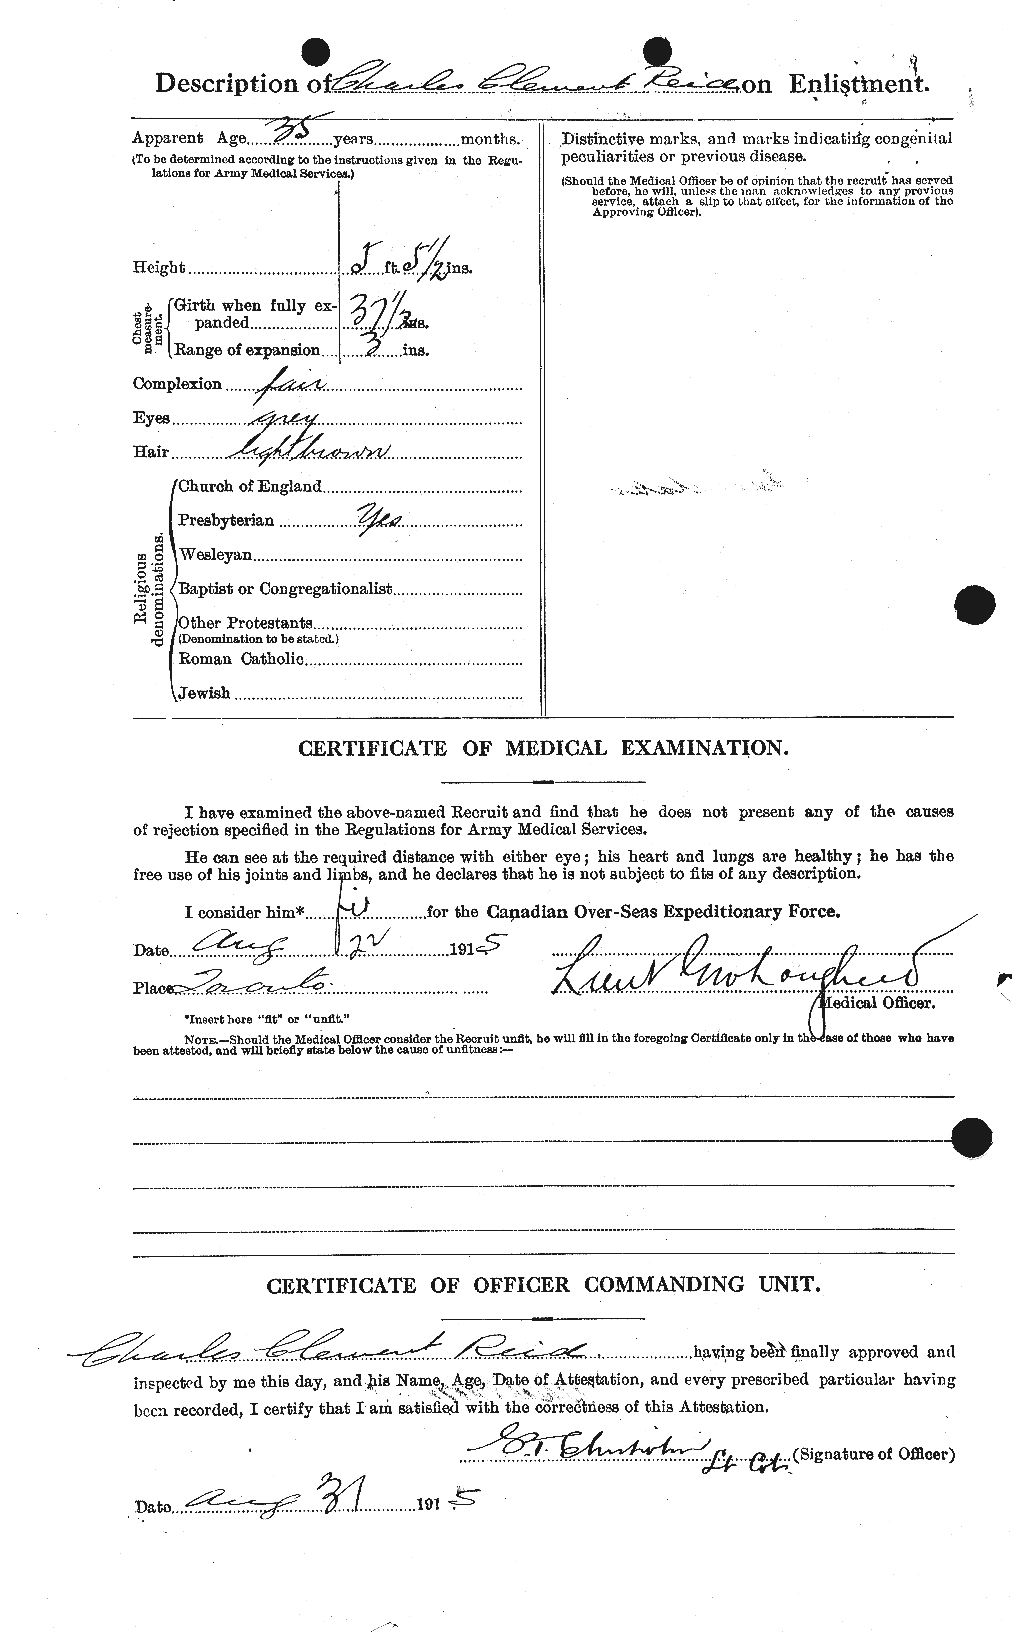 Dossiers du Personnel de la Première Guerre mondiale - CEC 597885b